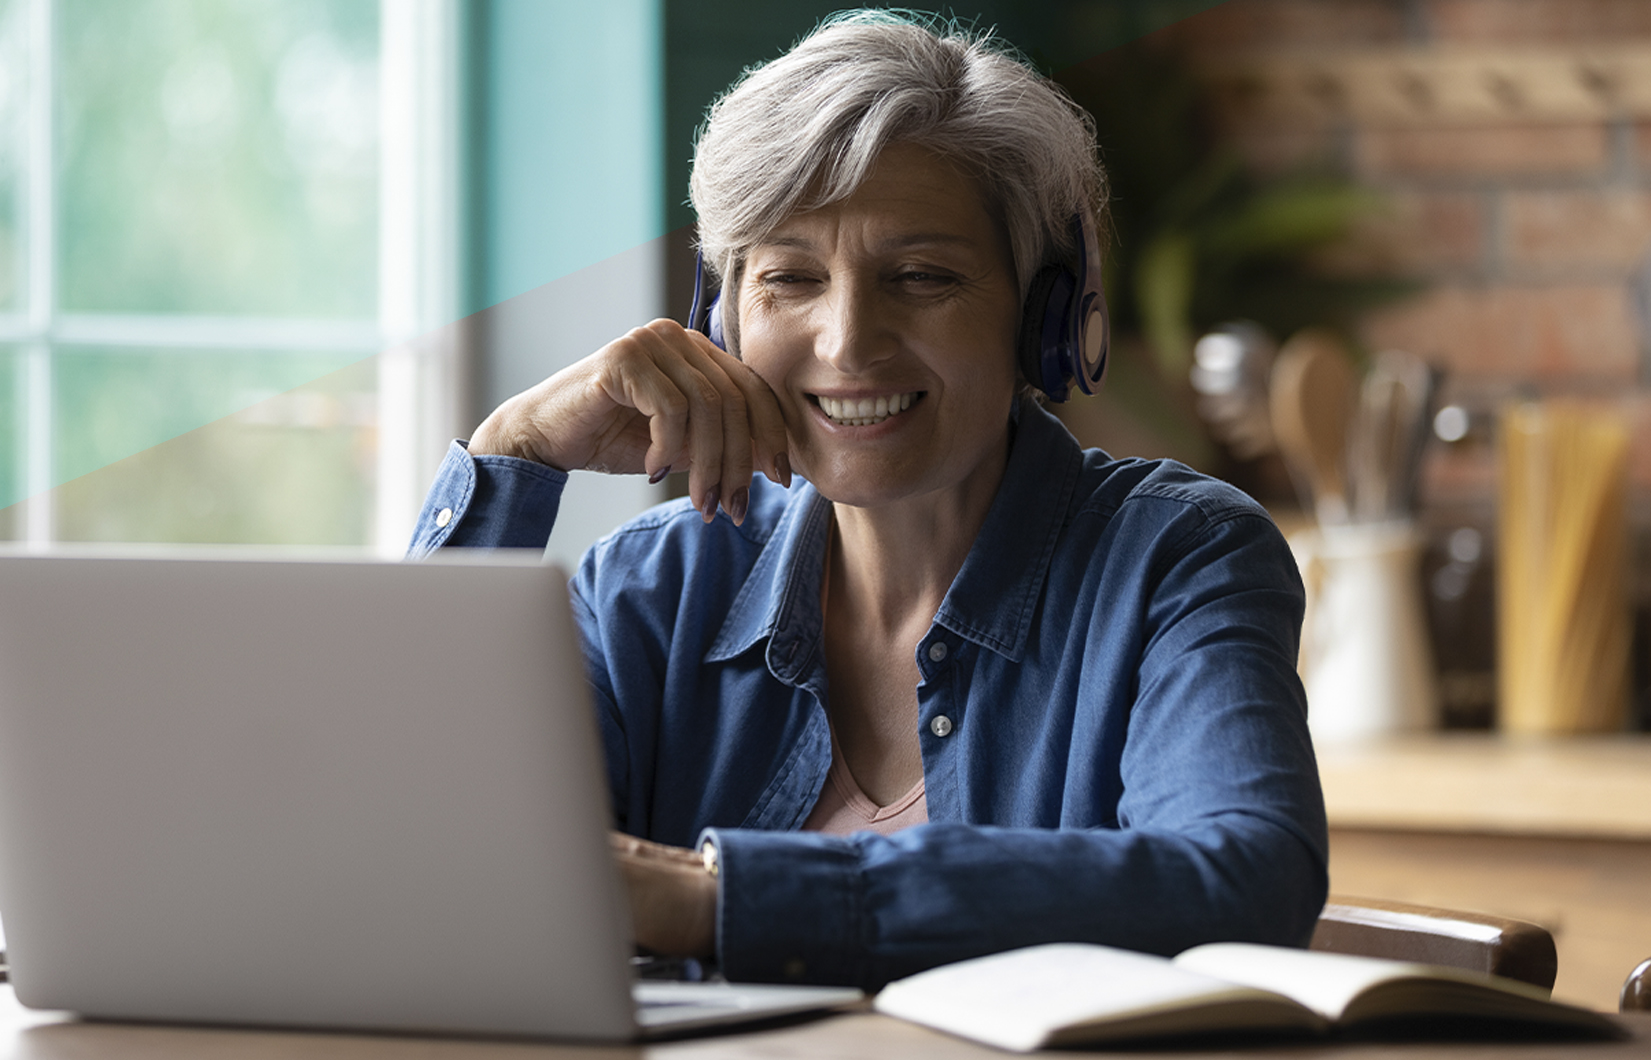 A imagem mostra uma mulher grisalha em frente a um computador. Ela veste uma camisa azul e sorri.